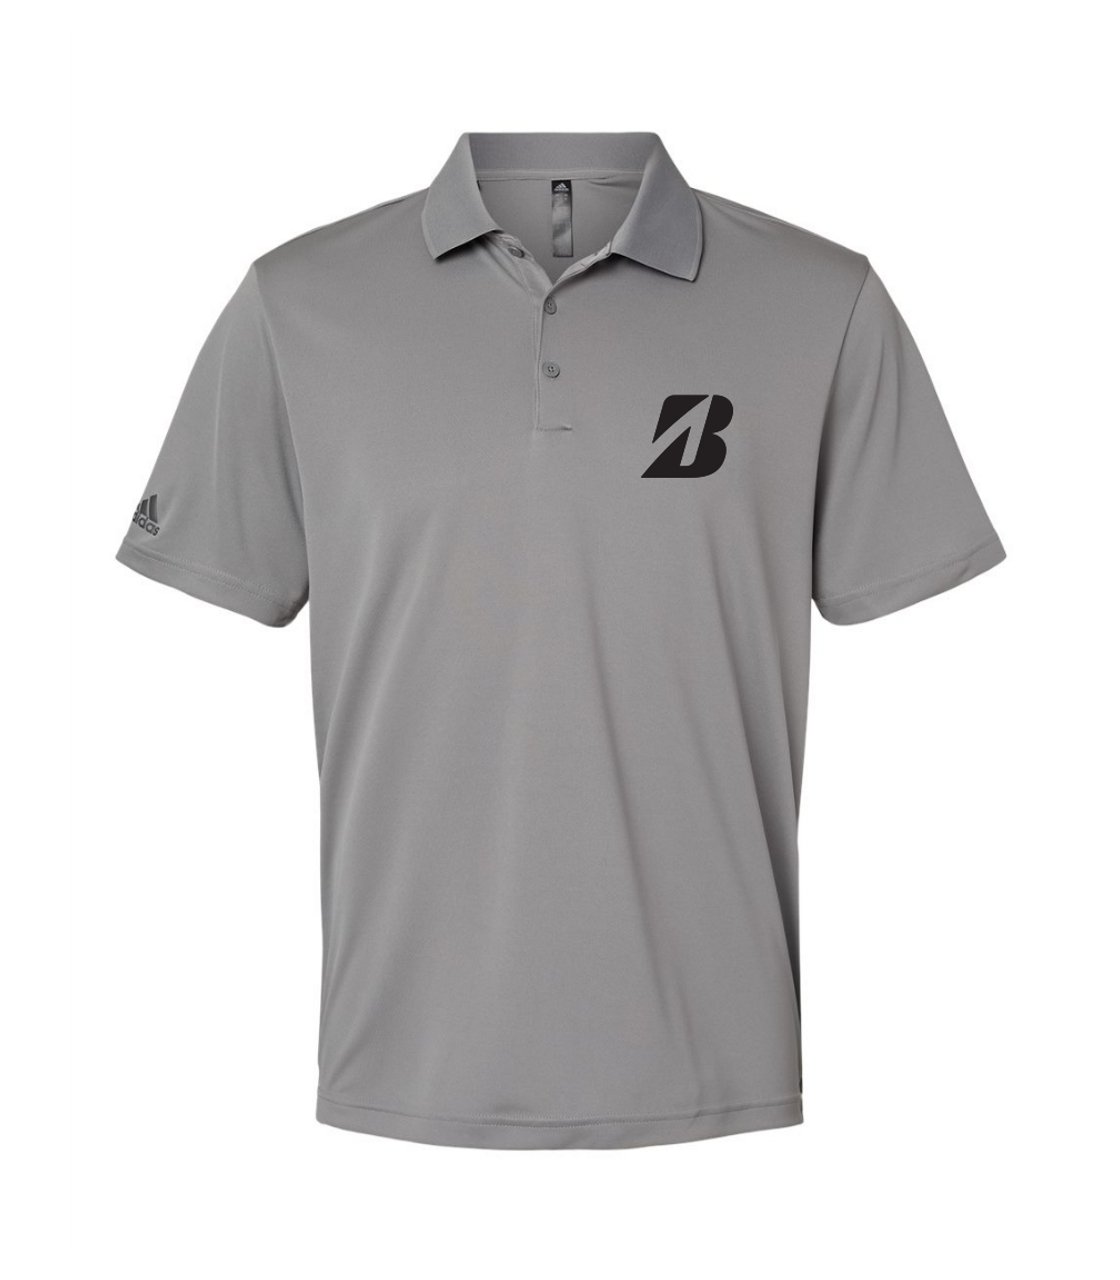 Bridgestone "B" Adidas - Sport Shirt - A&A Custom Wear